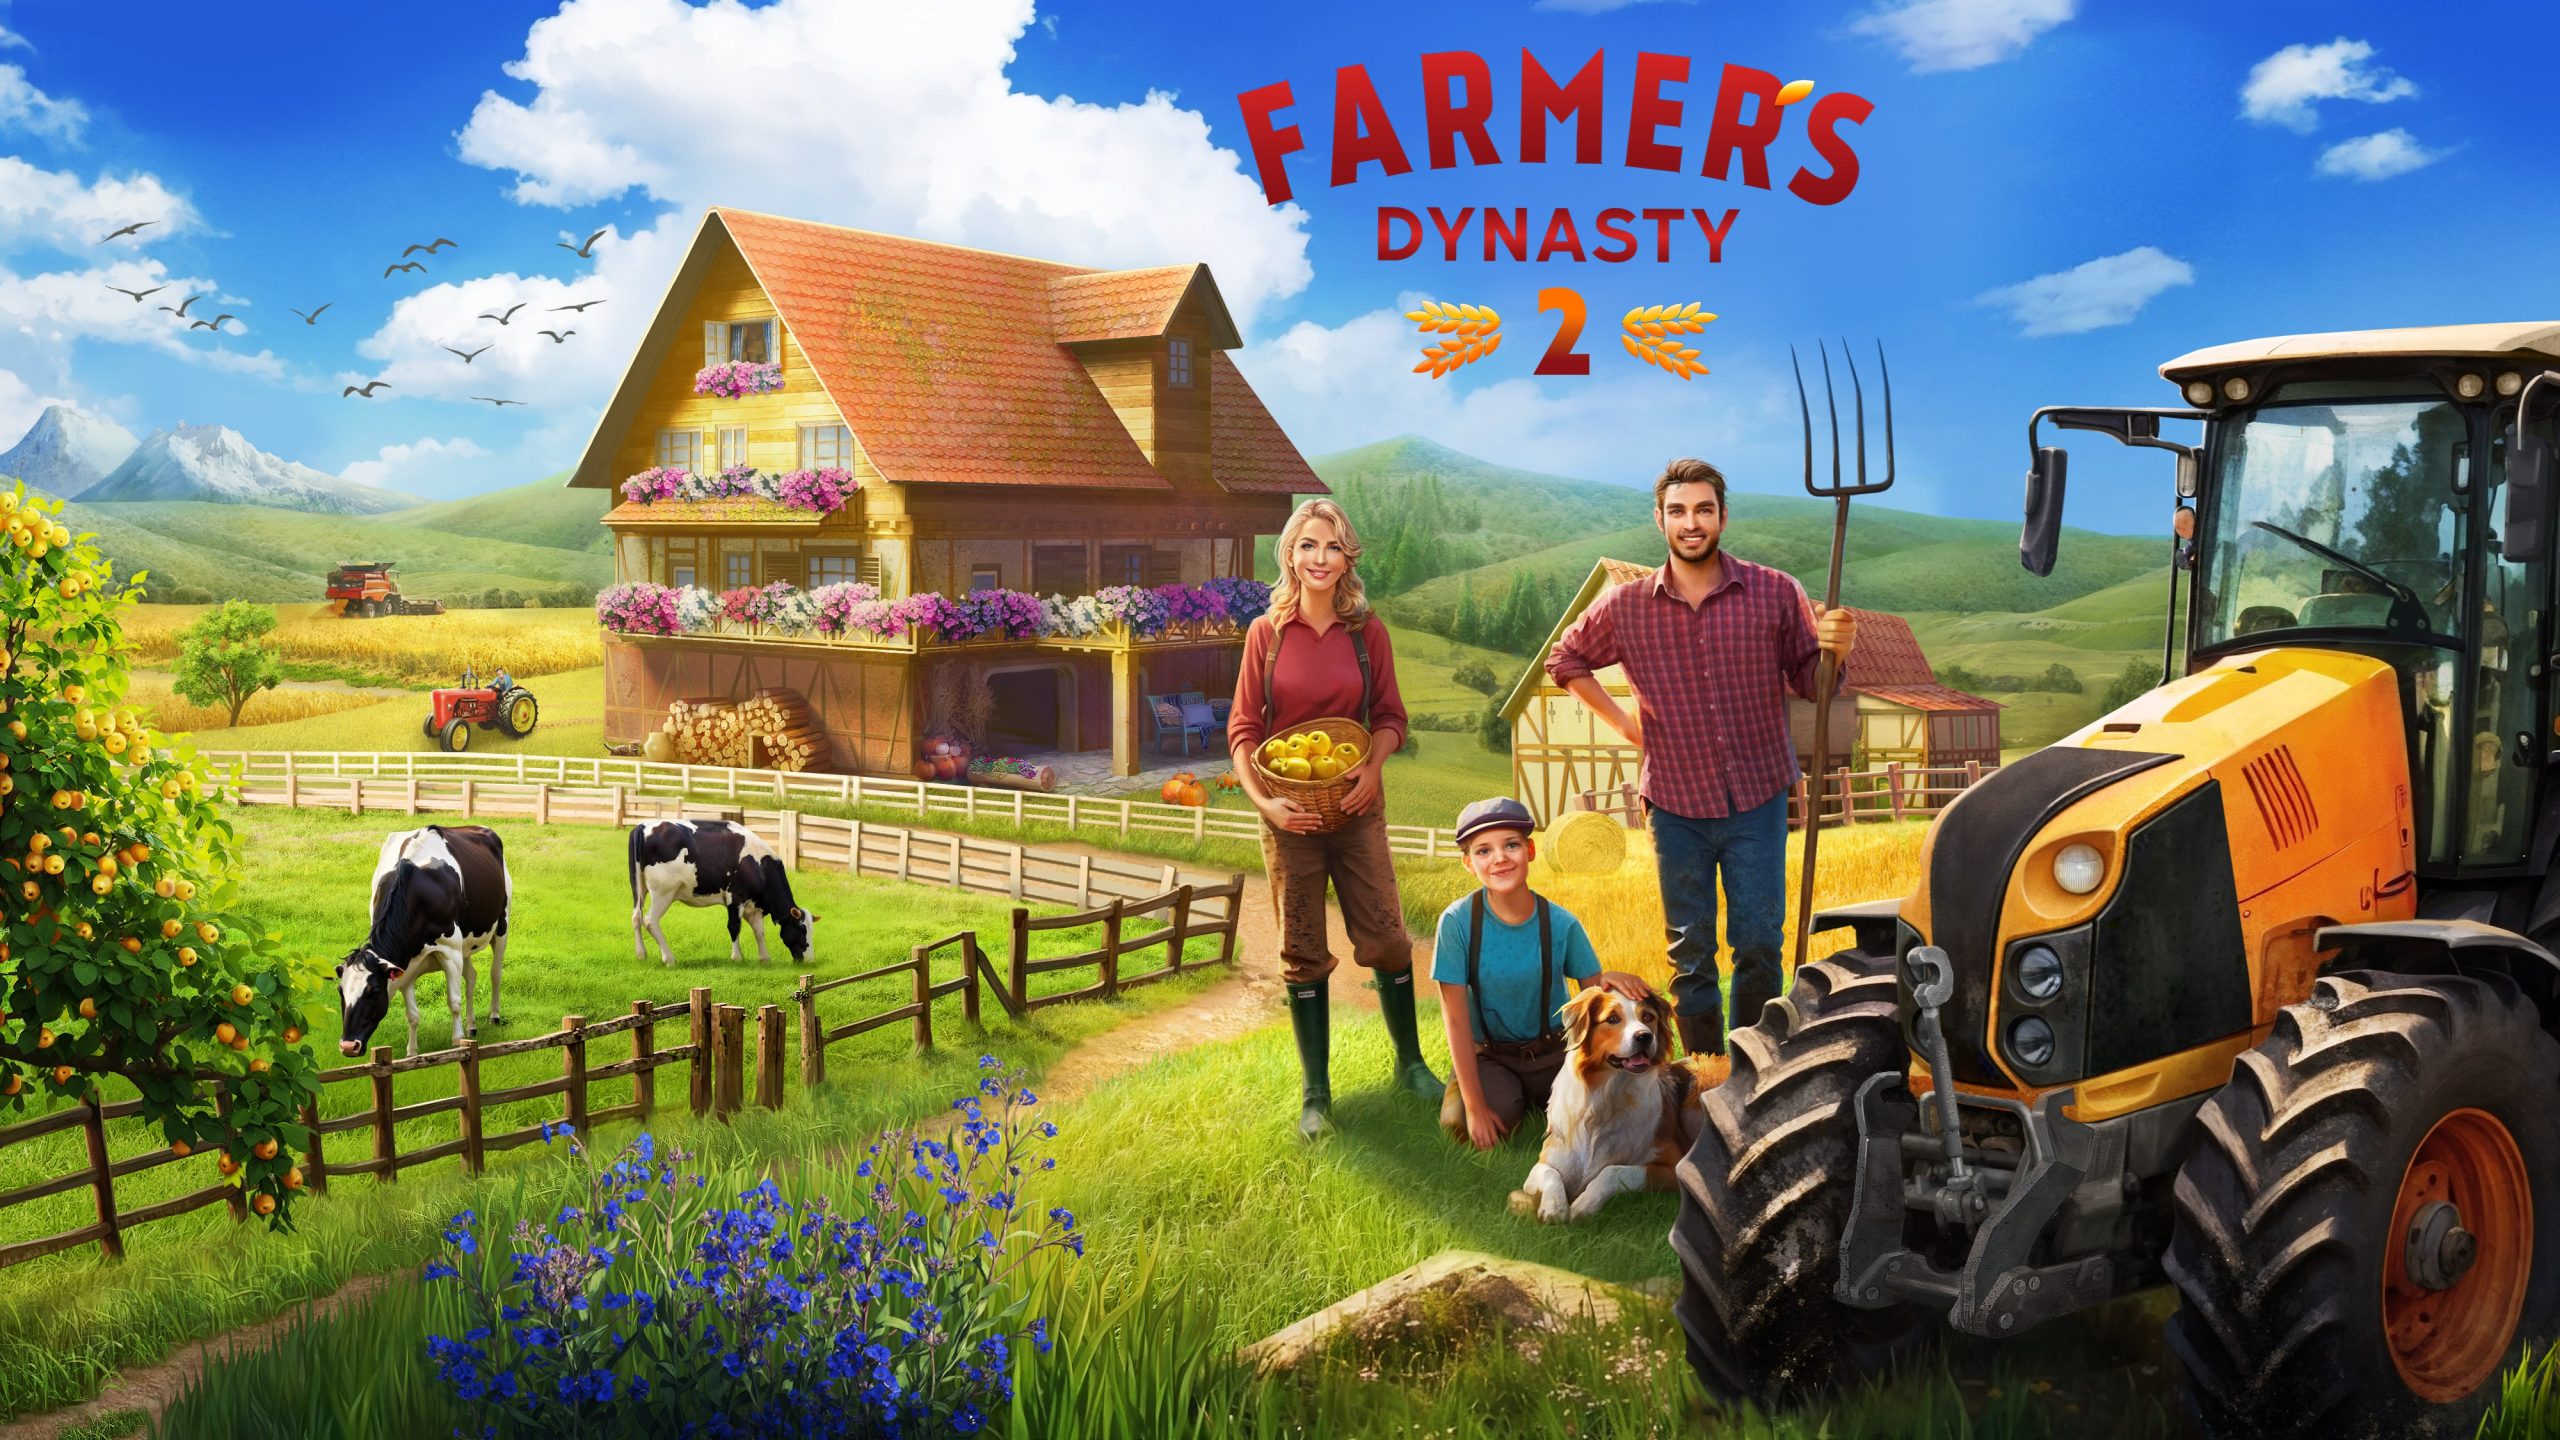 Ranch Simulator - IGN